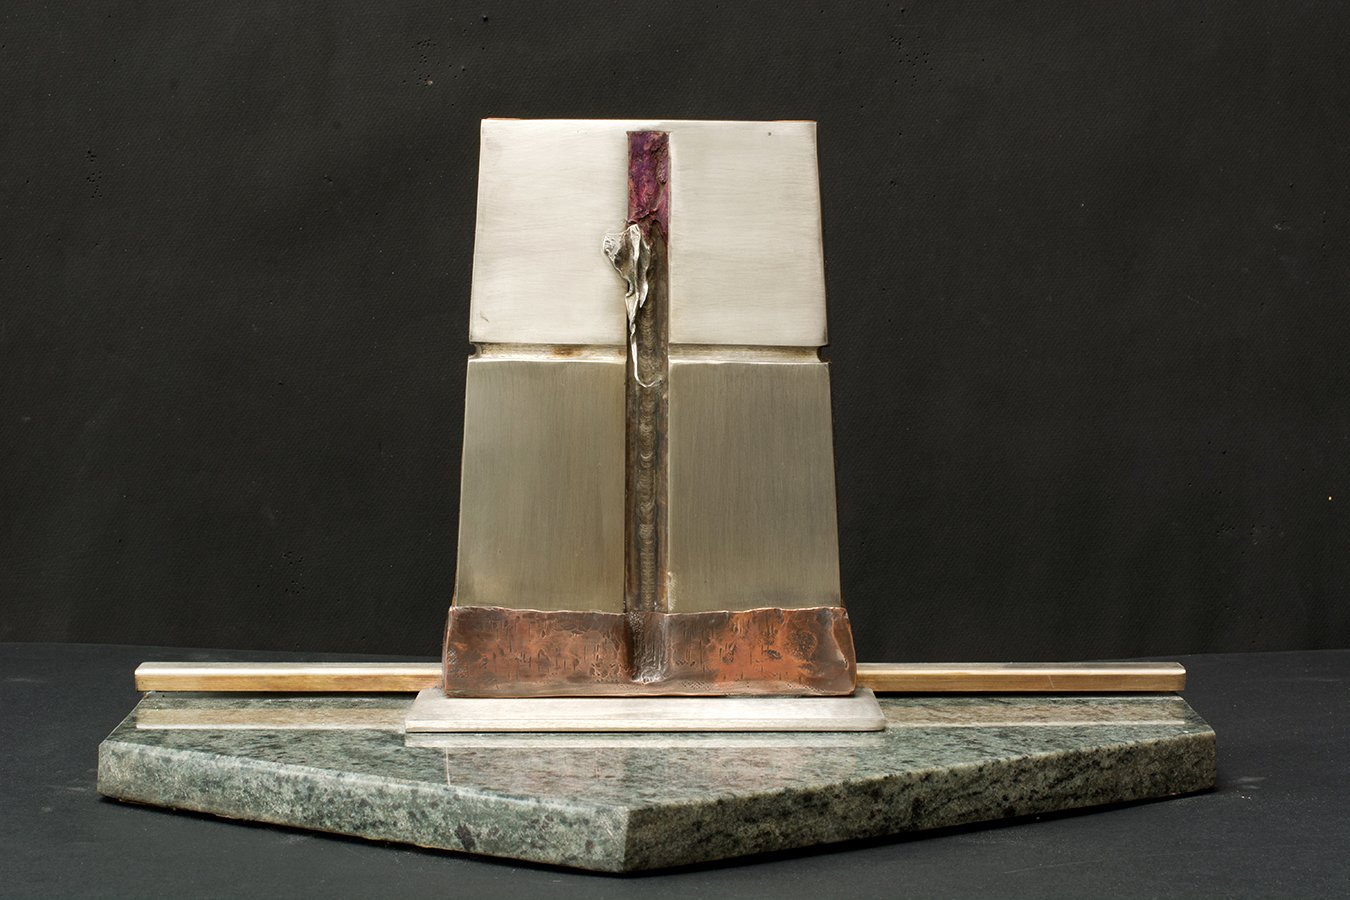 Miroir-Mémorial 1986-2015 270x440x245 acier inox, cuivre, marbre